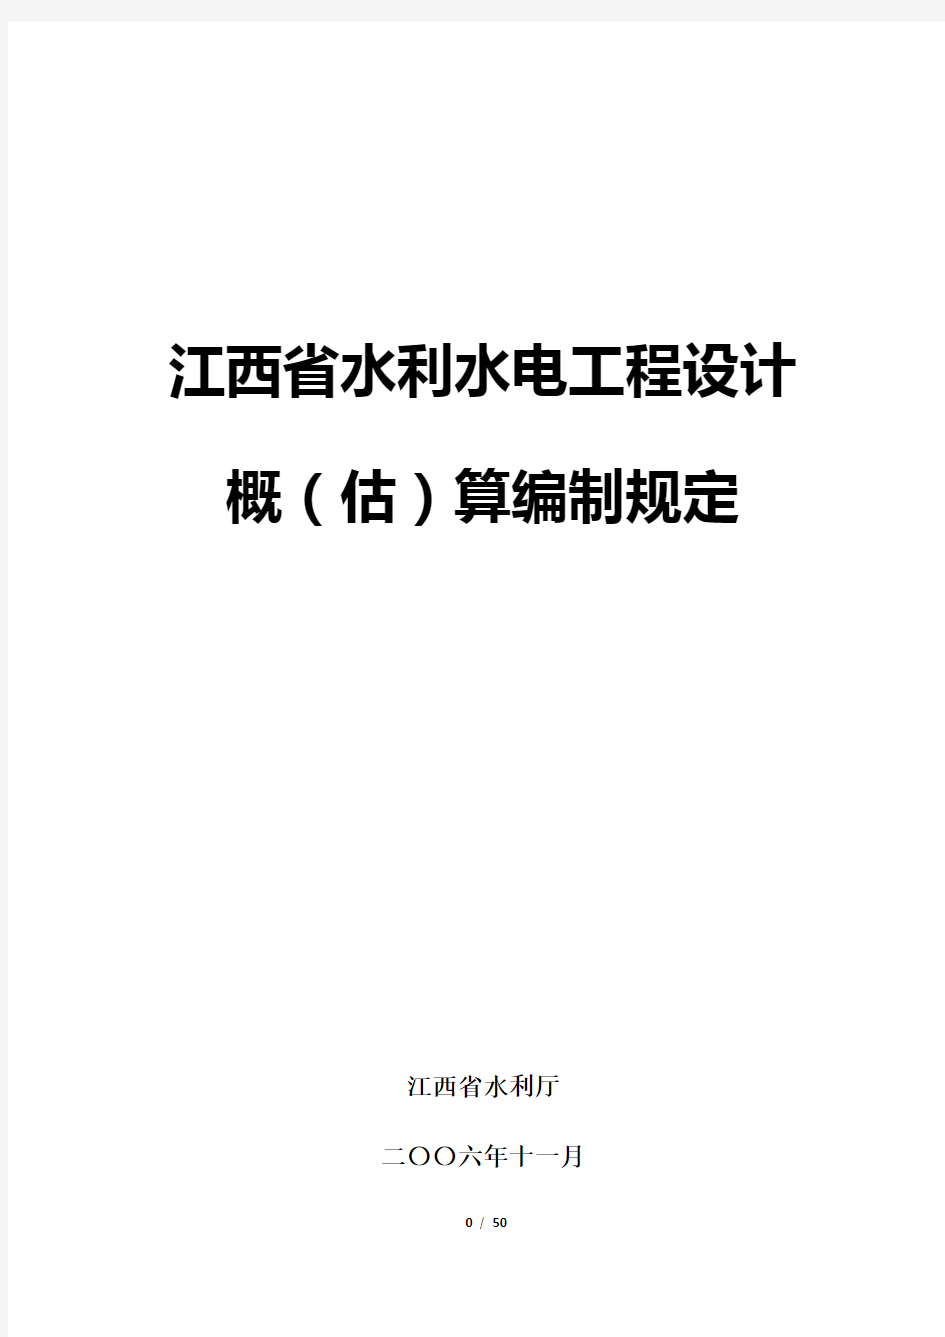 江西省水利水电工程设计概(估)算编制规定2006